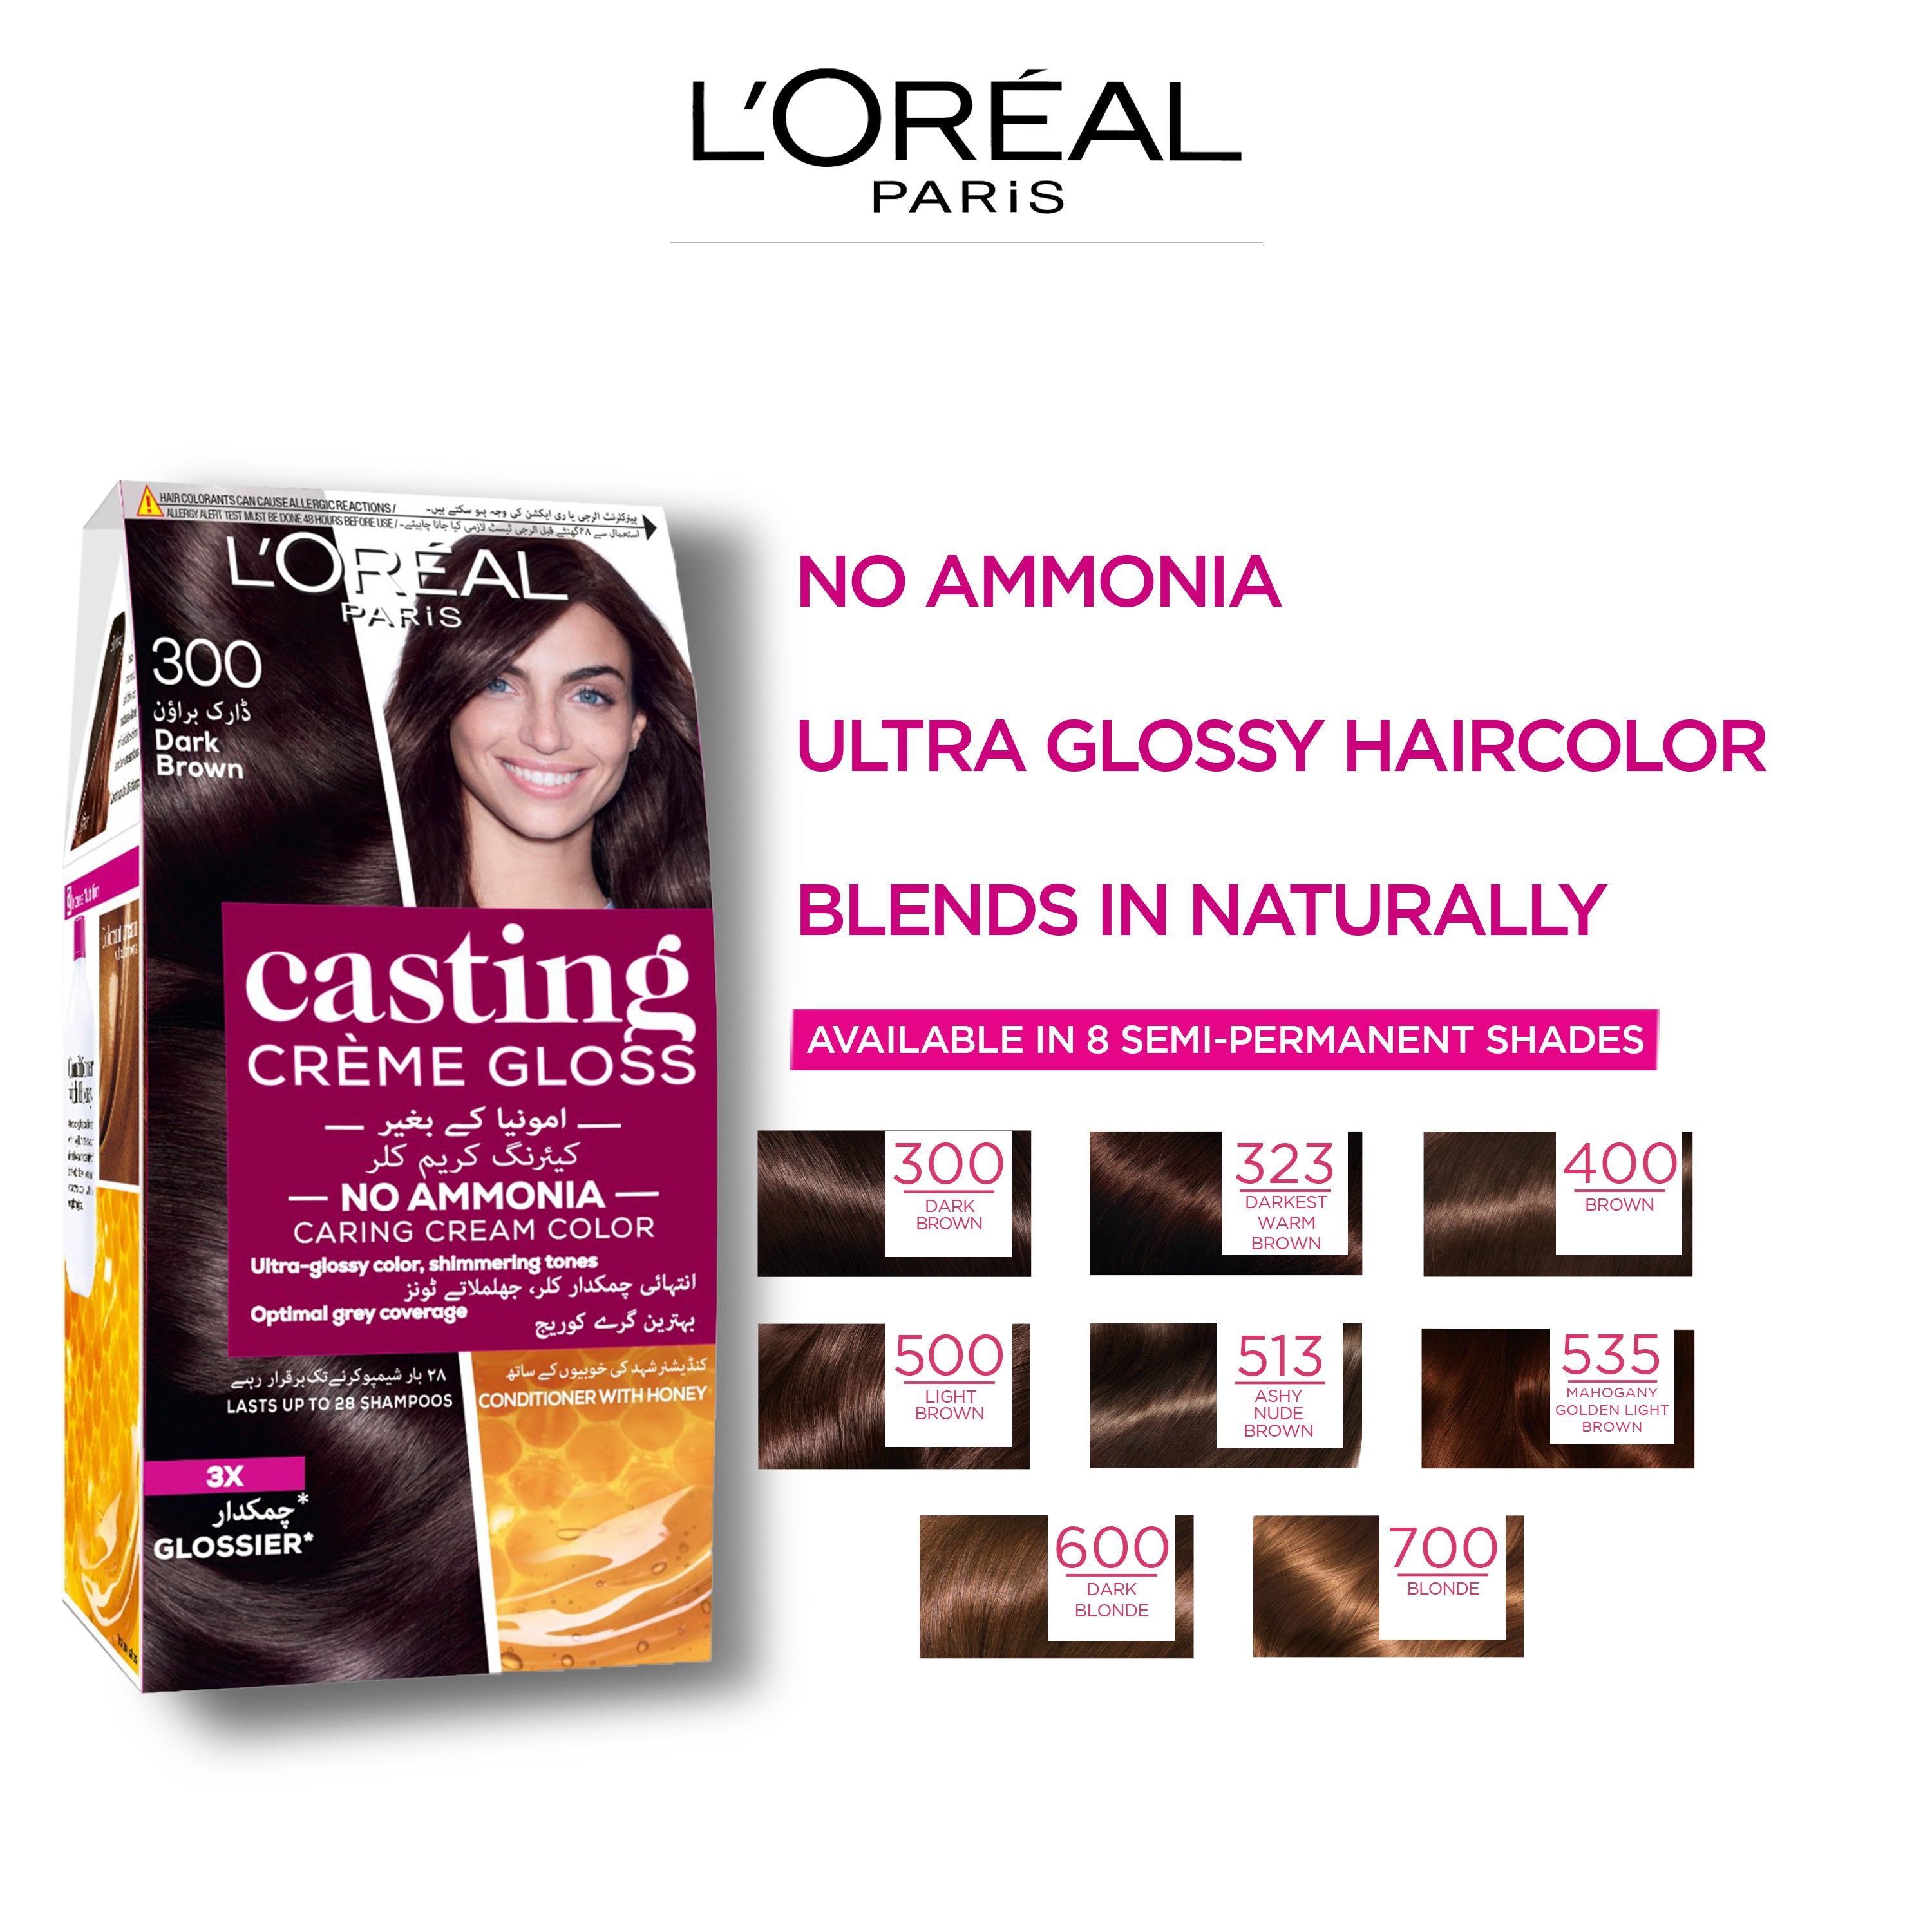 LOreal Paris Casting Creme Gloss - 300 Dark Brown Hair Color